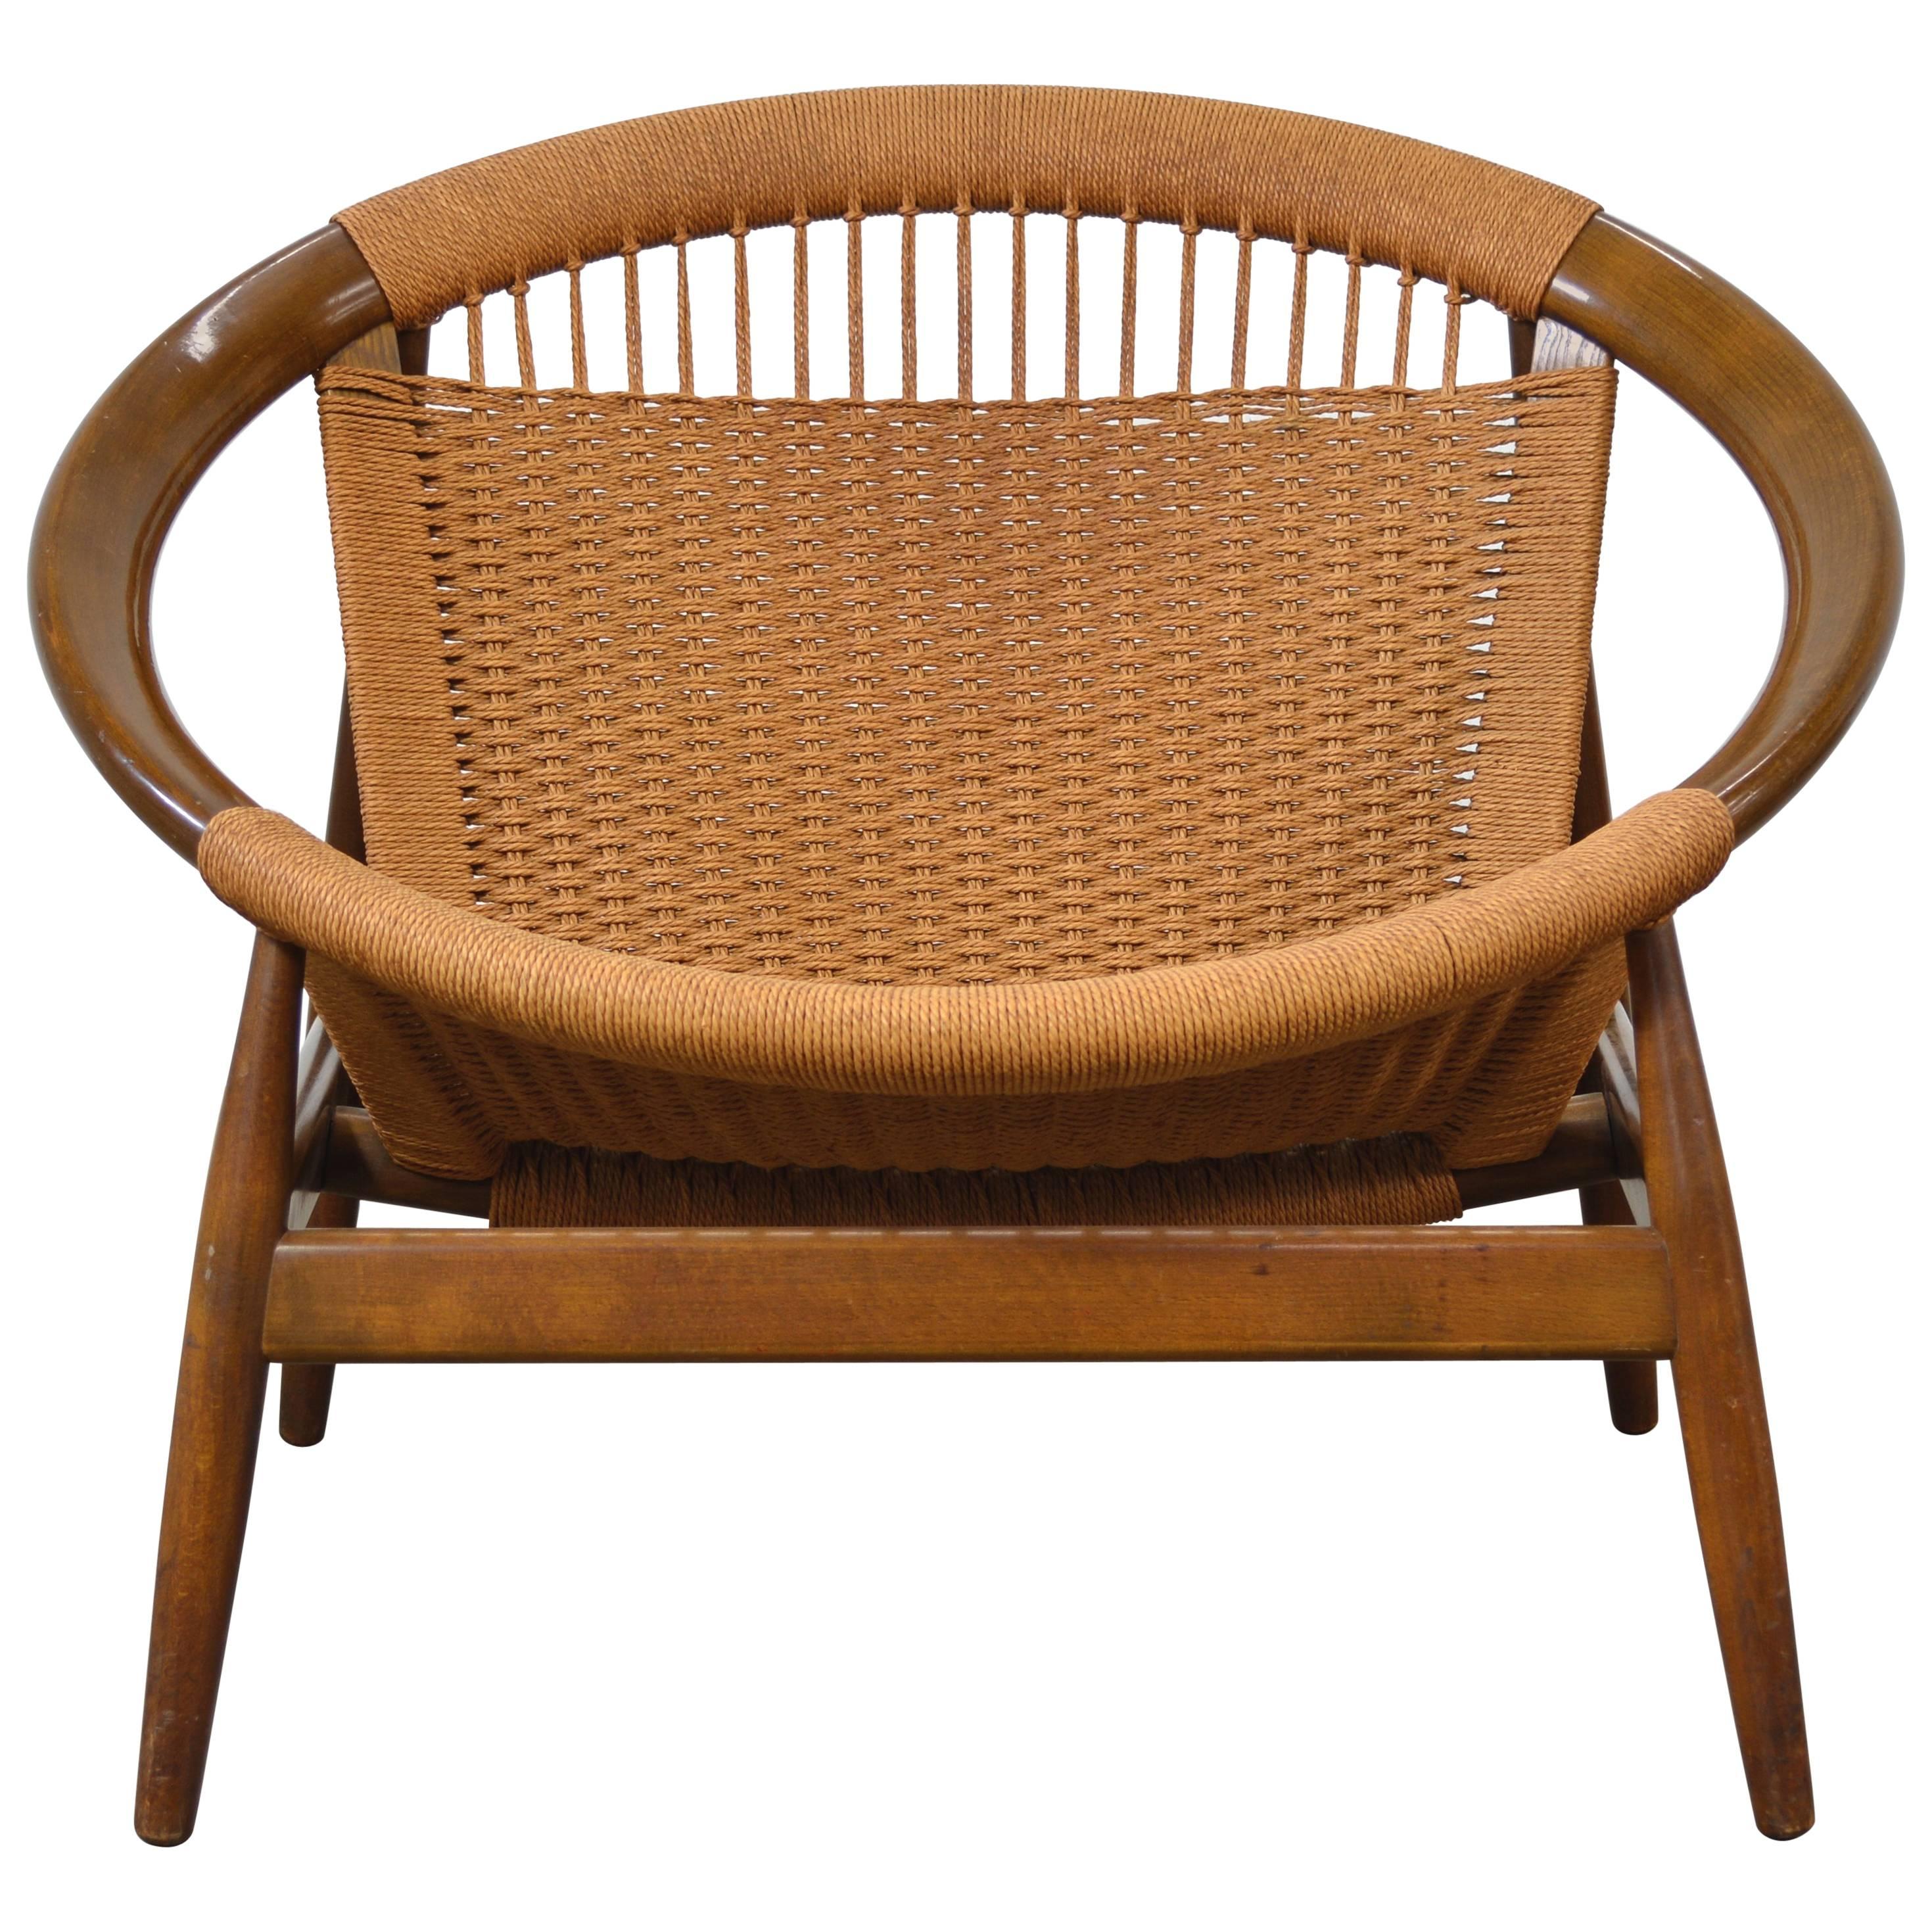 Illum Wikkelsø "Ringstol" Chair For Sale